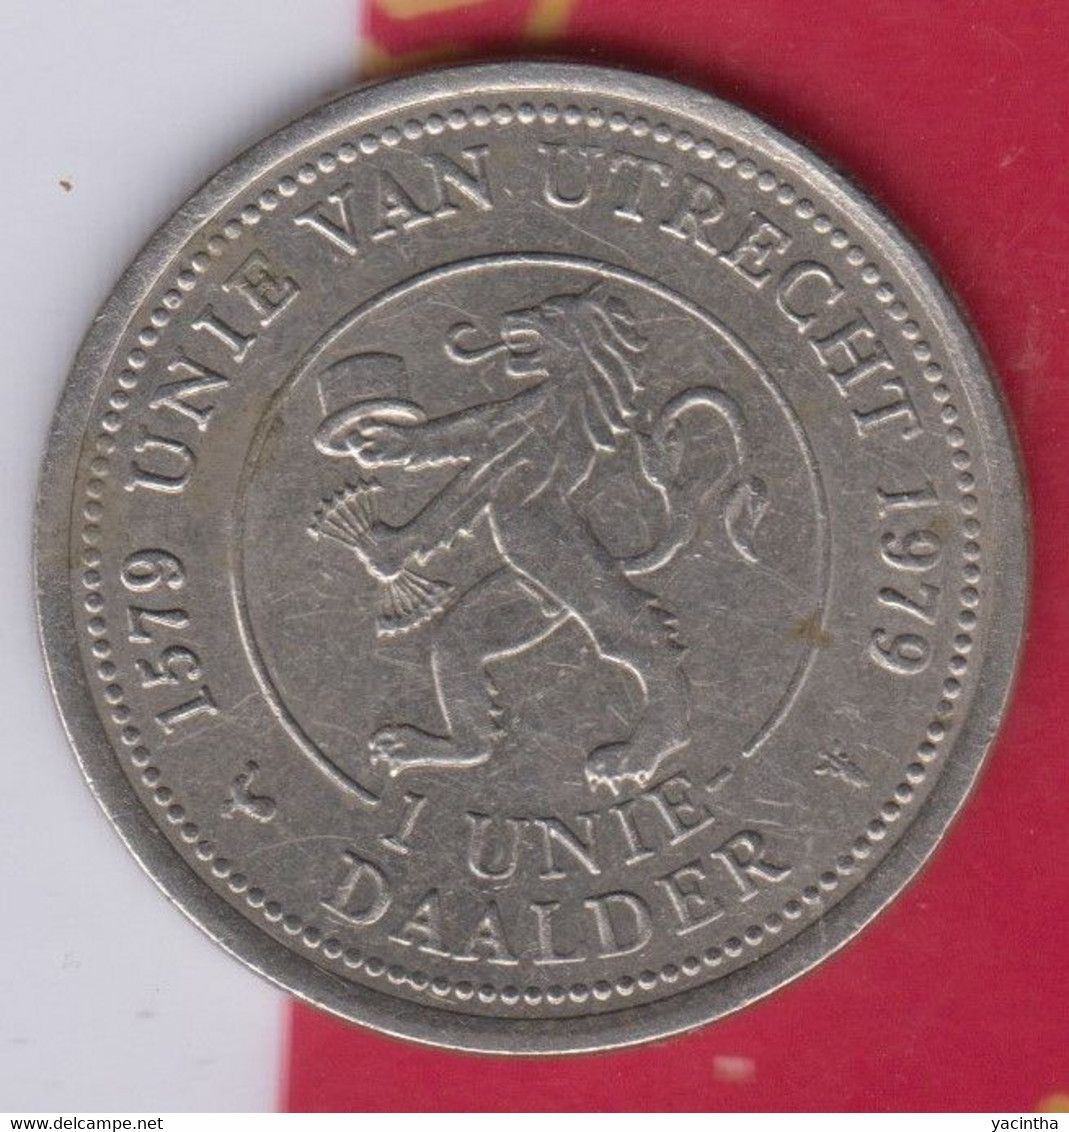 1 Unie Daalder  . Unie Van Utrecht  1979      (1016) - Monedas Elongadas (elongated Coins)